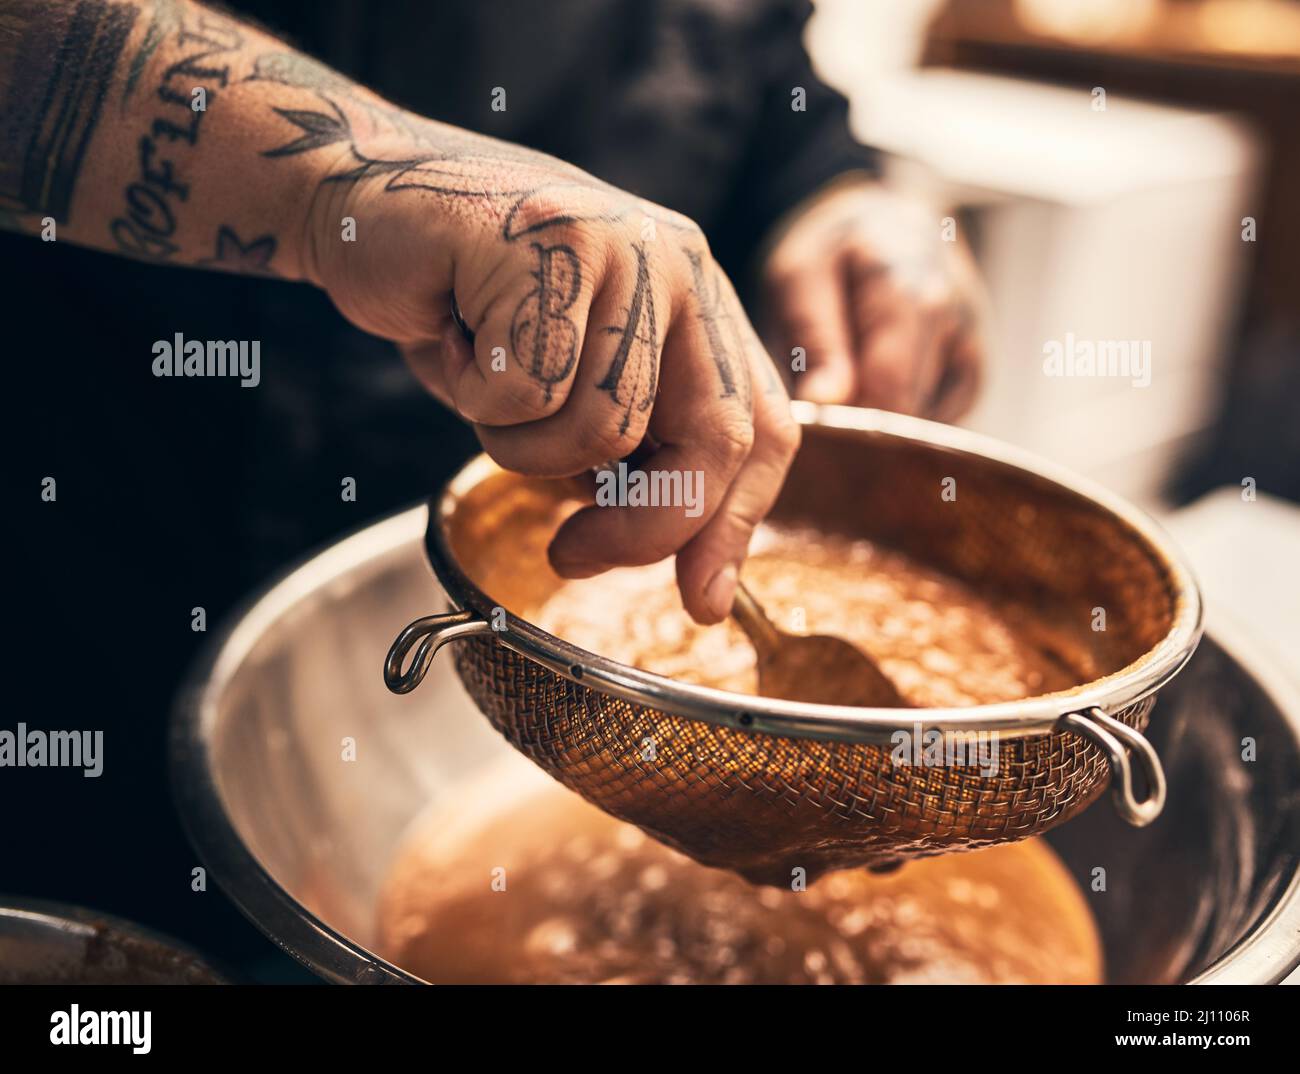 Ce plat est un défonce. Gros plan d'un chef méconnu tatoué les mains en train de mettre la nourriture dans un bol de la cuisine d'un restaurant. Banque D'Images